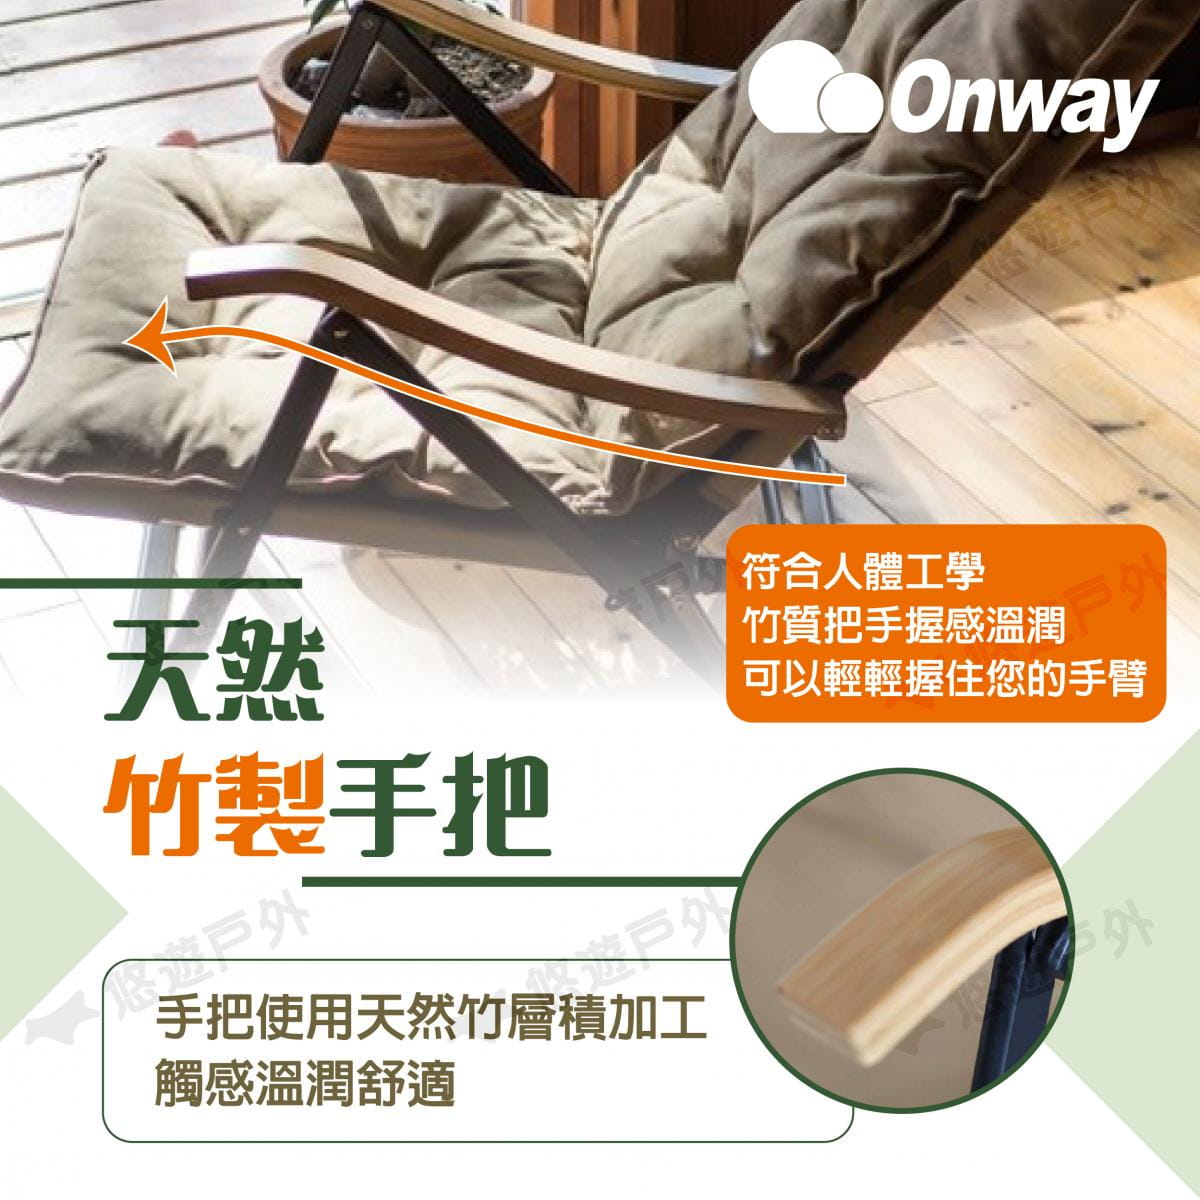 【ONWAY】舒適木質扶手低椅升級版 OW-61BD-BMPLUS (悠遊戶外) 3